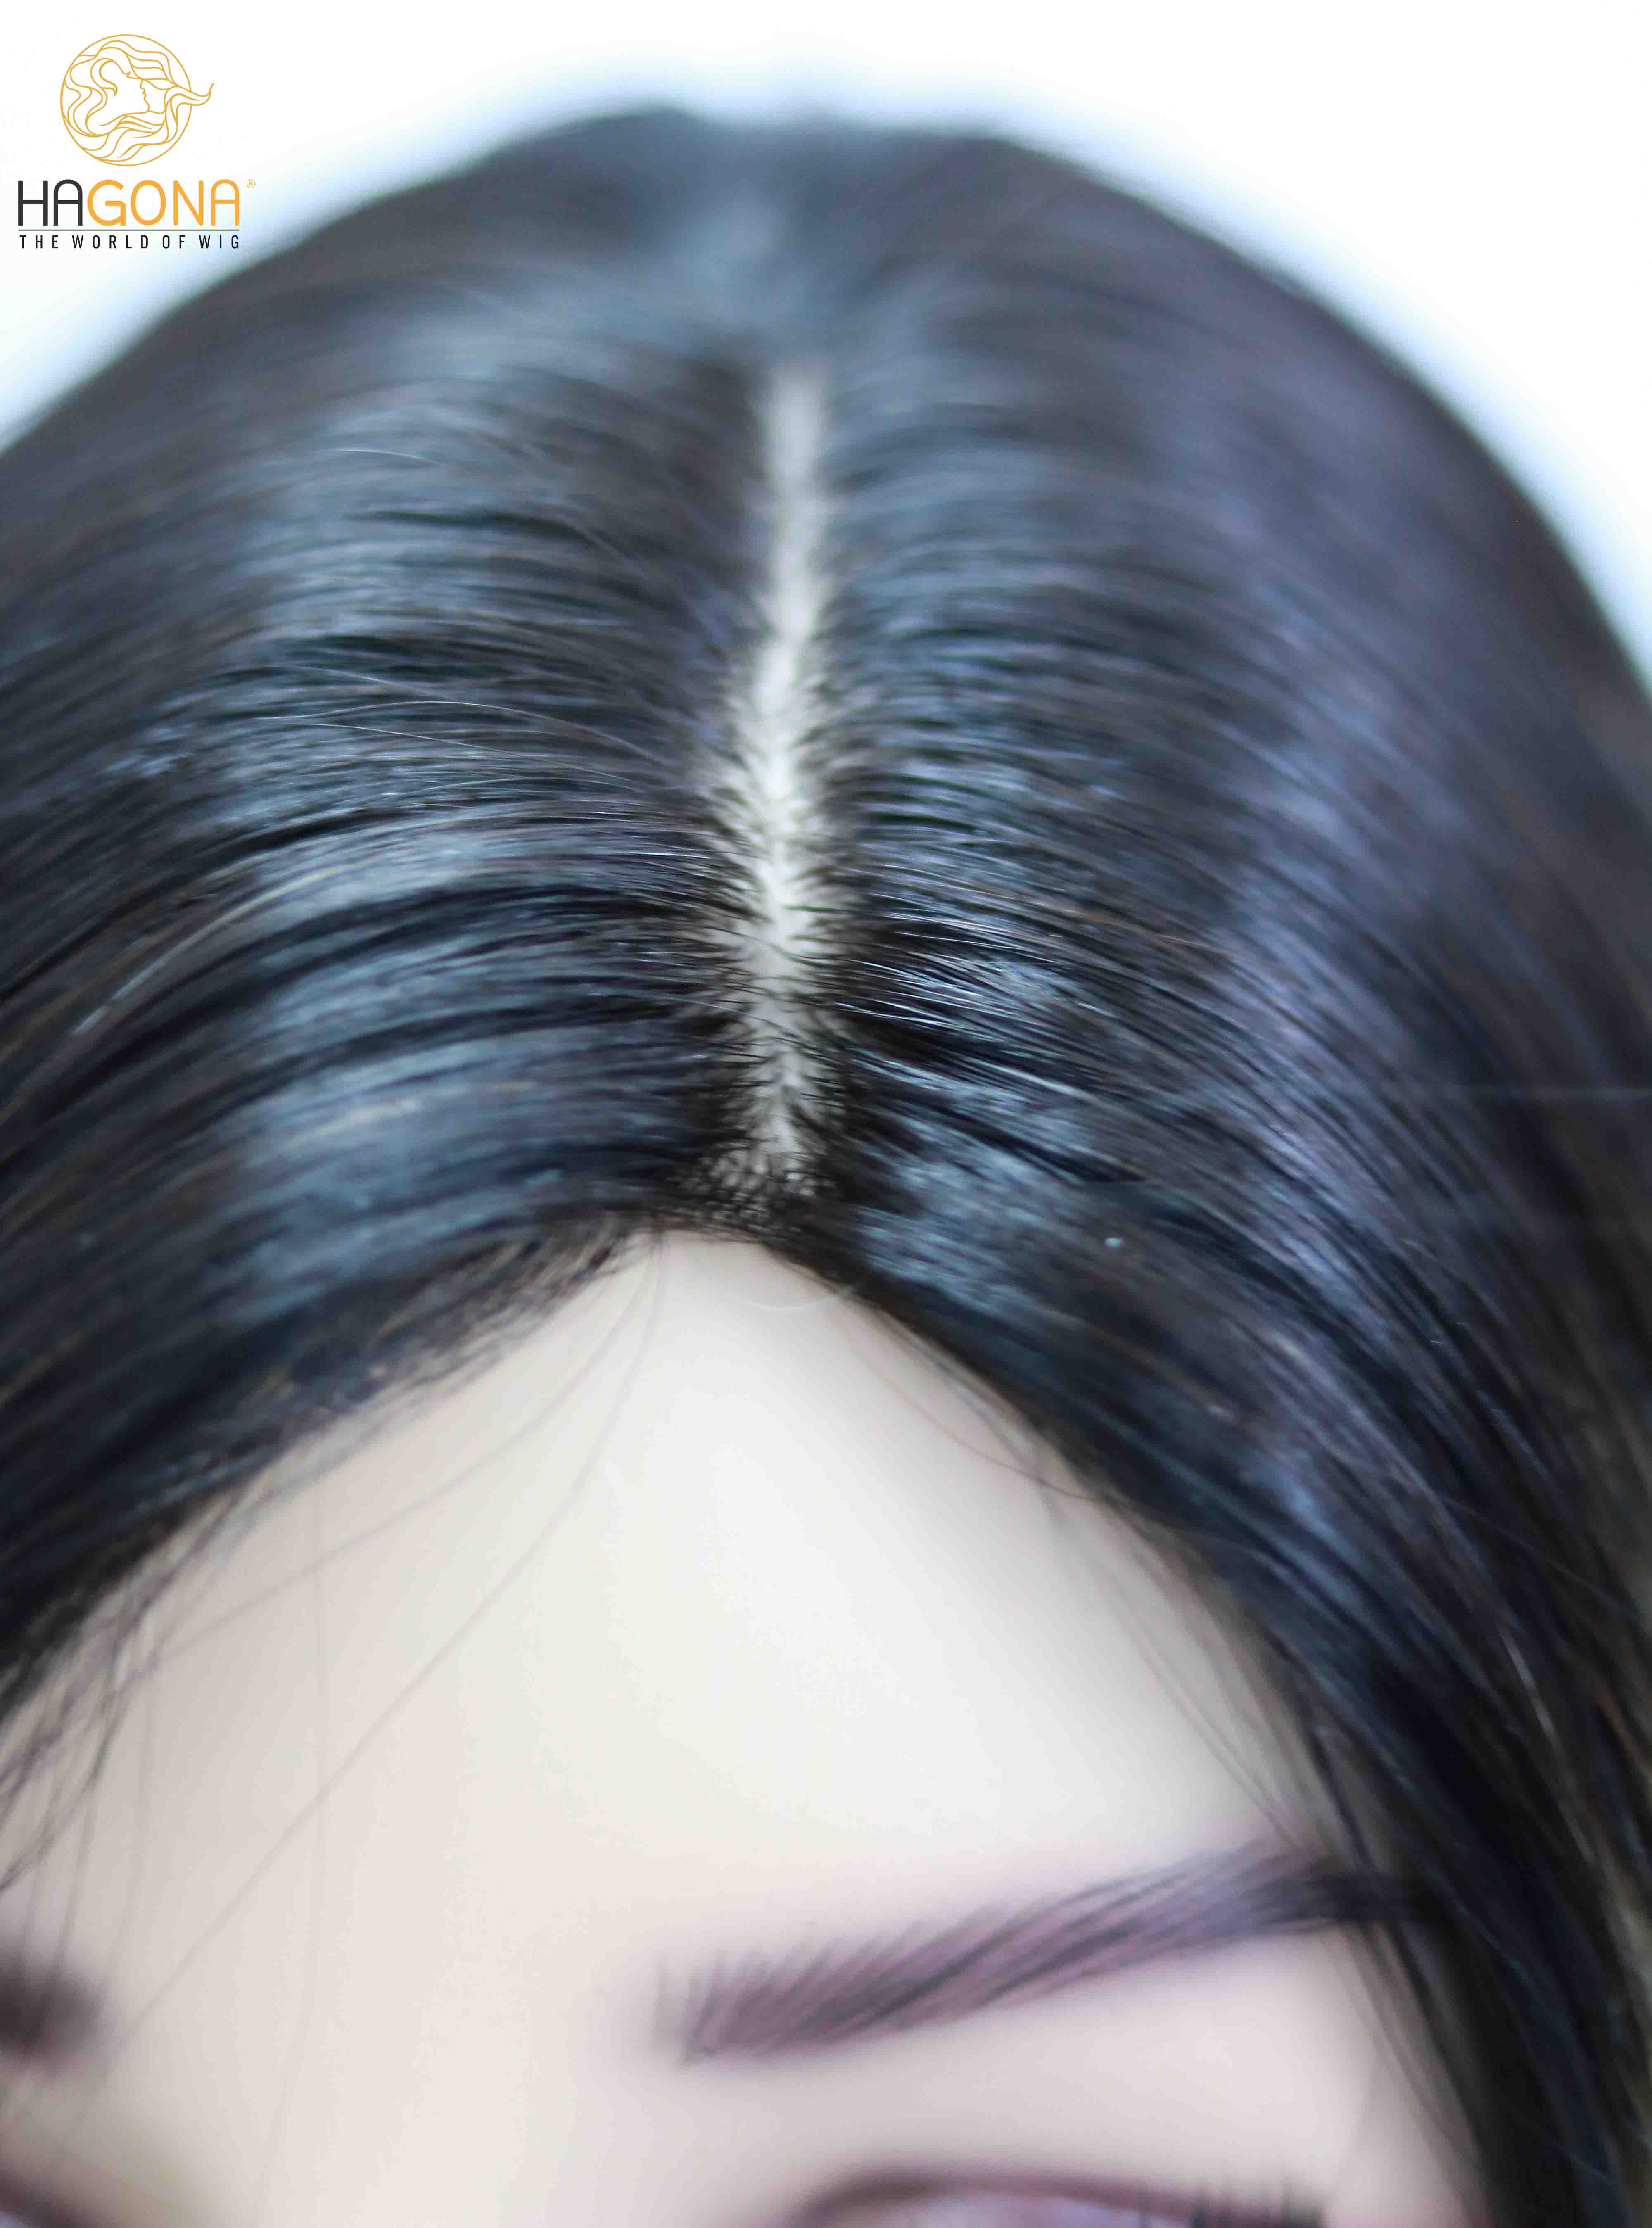 Tóc giả nữ dài thẳng từ Hagona đem lại sự tự tin và quyến rũ cho chị em phụ nữ. Với chất liệu cao cấp và đa dạng kiểu dáng, bạn sẽ chọn được phong cách tóc phù hợp với bản thân. Hãy xem hình ảnh để tìm kiếm sự hoàn hảo.